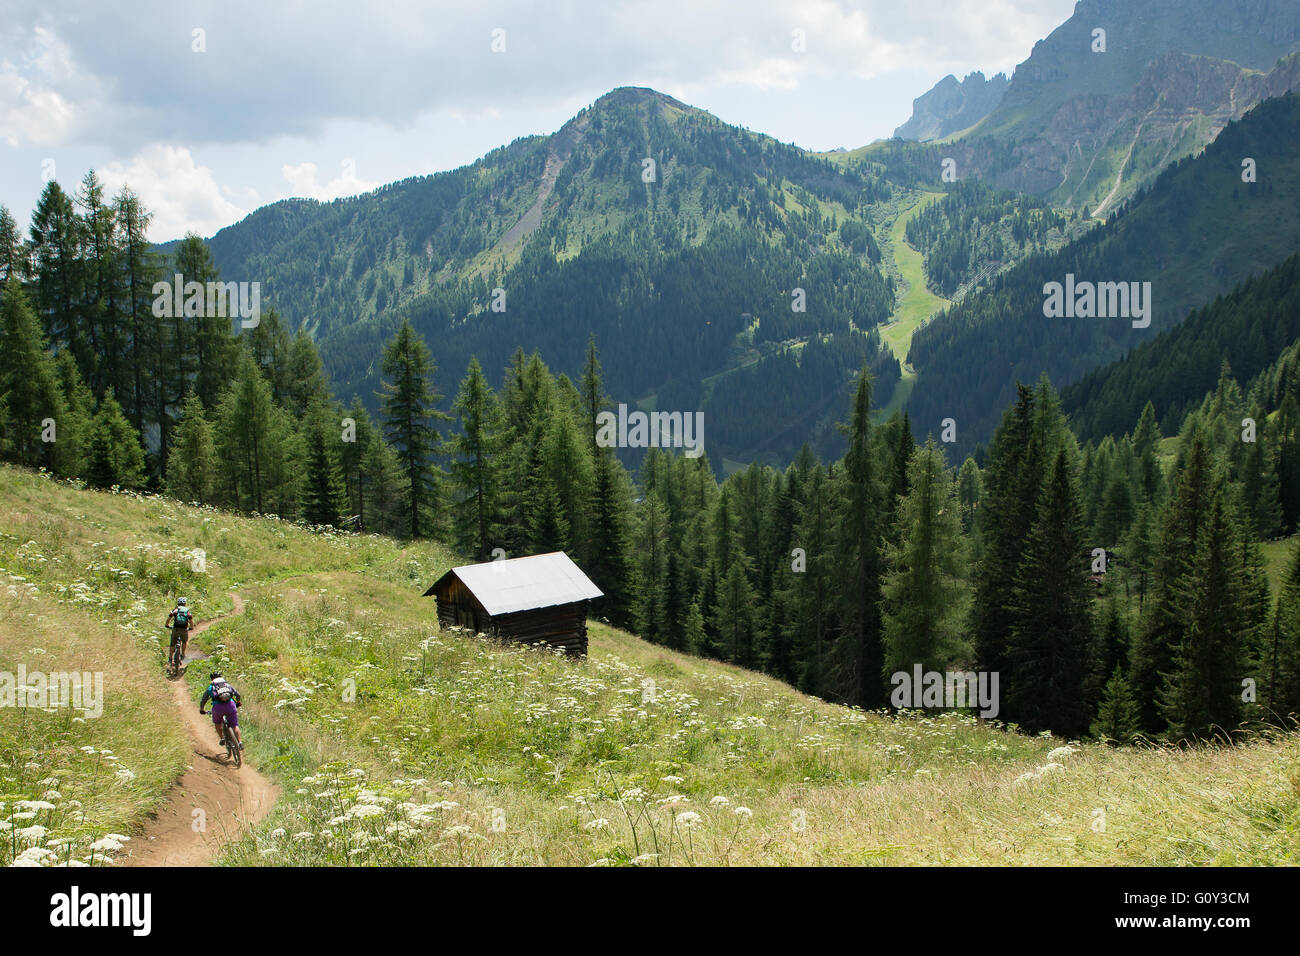 Two adults mountain biking in Dolomite mountains, Italy Stock Photo